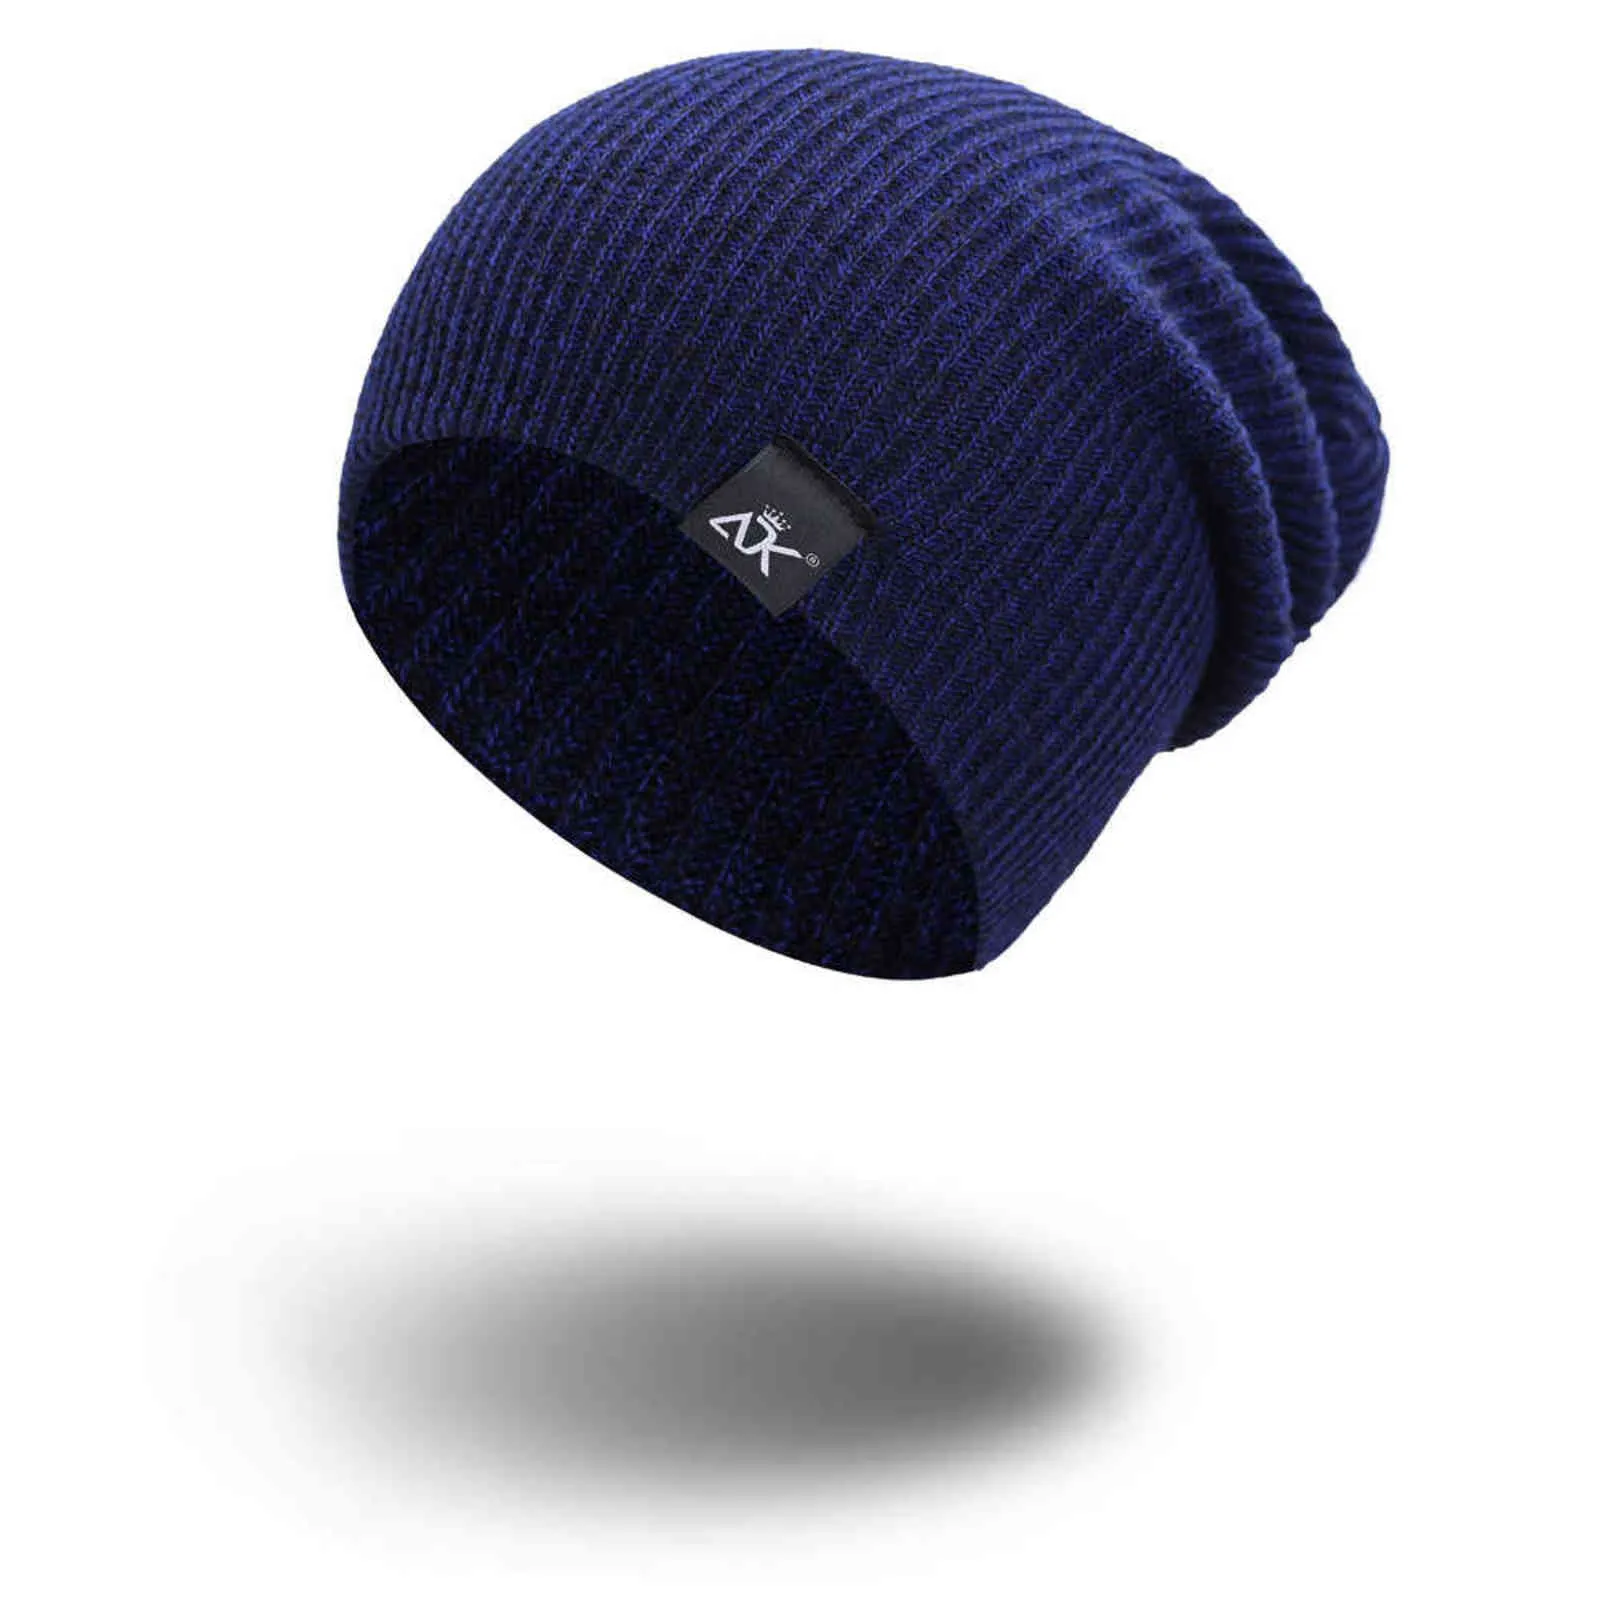 Moda femenina ADK Etiqueta Sombreros de invierno de punto para mujeres 2021 Hombres Otoño Cálido Crochet Mezclas Skullies Gorros Hip Hop Bonnet Hat Y21111